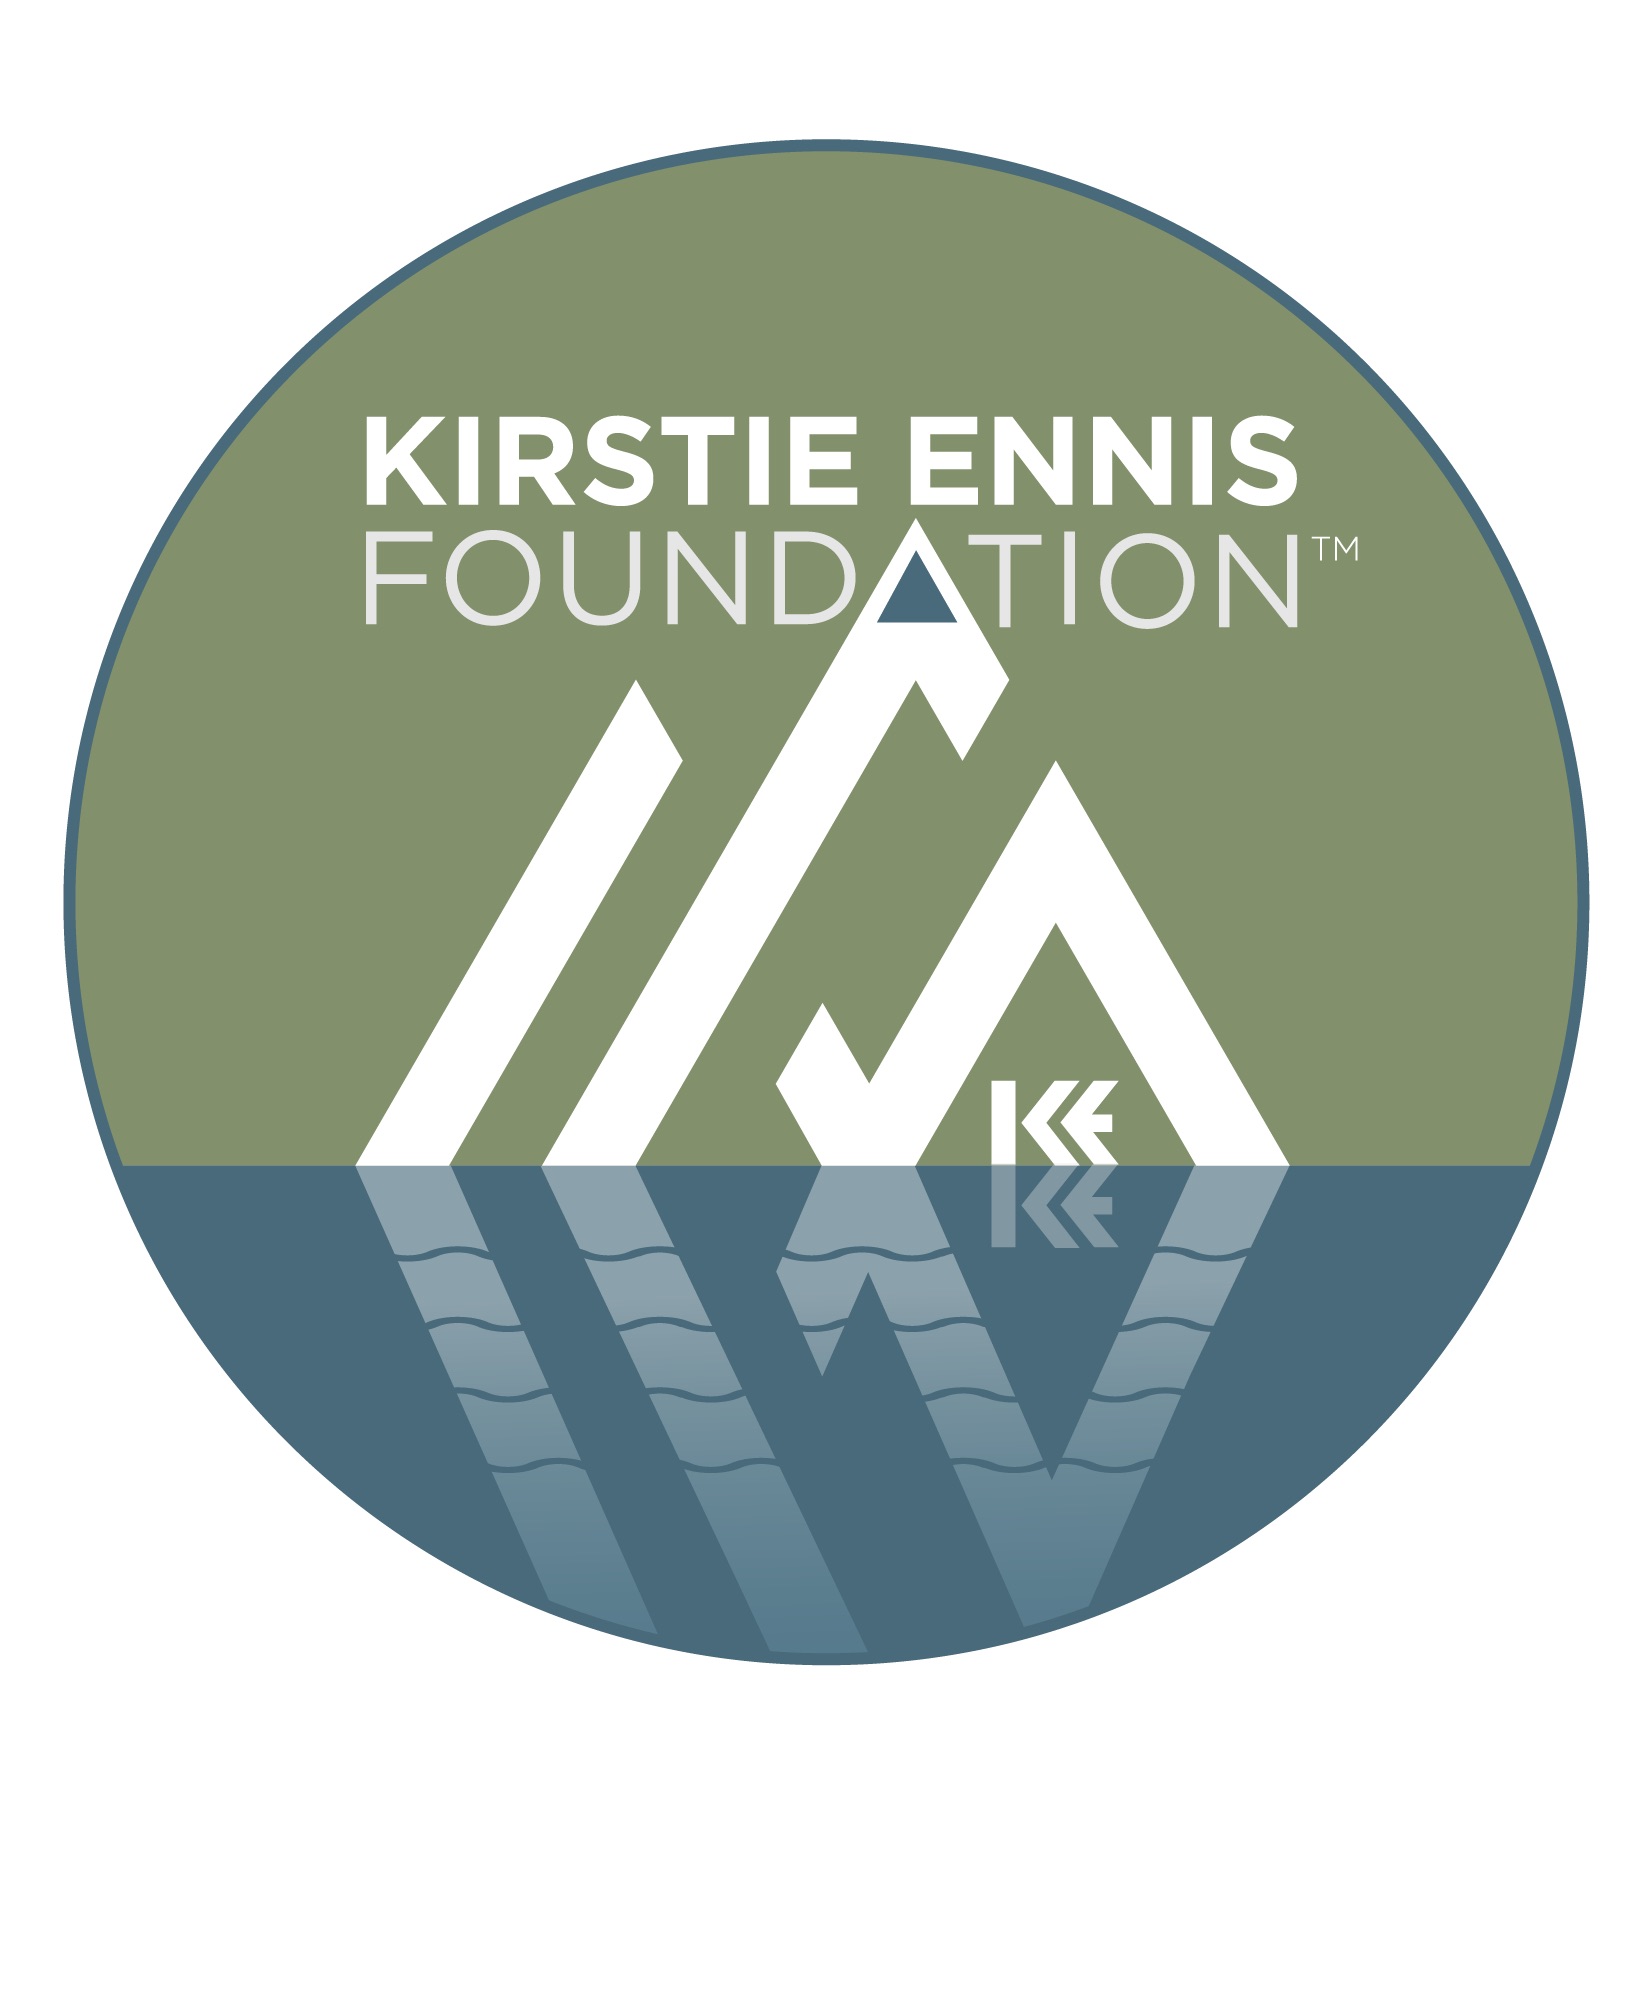 The Kirstie Ennis Foundation